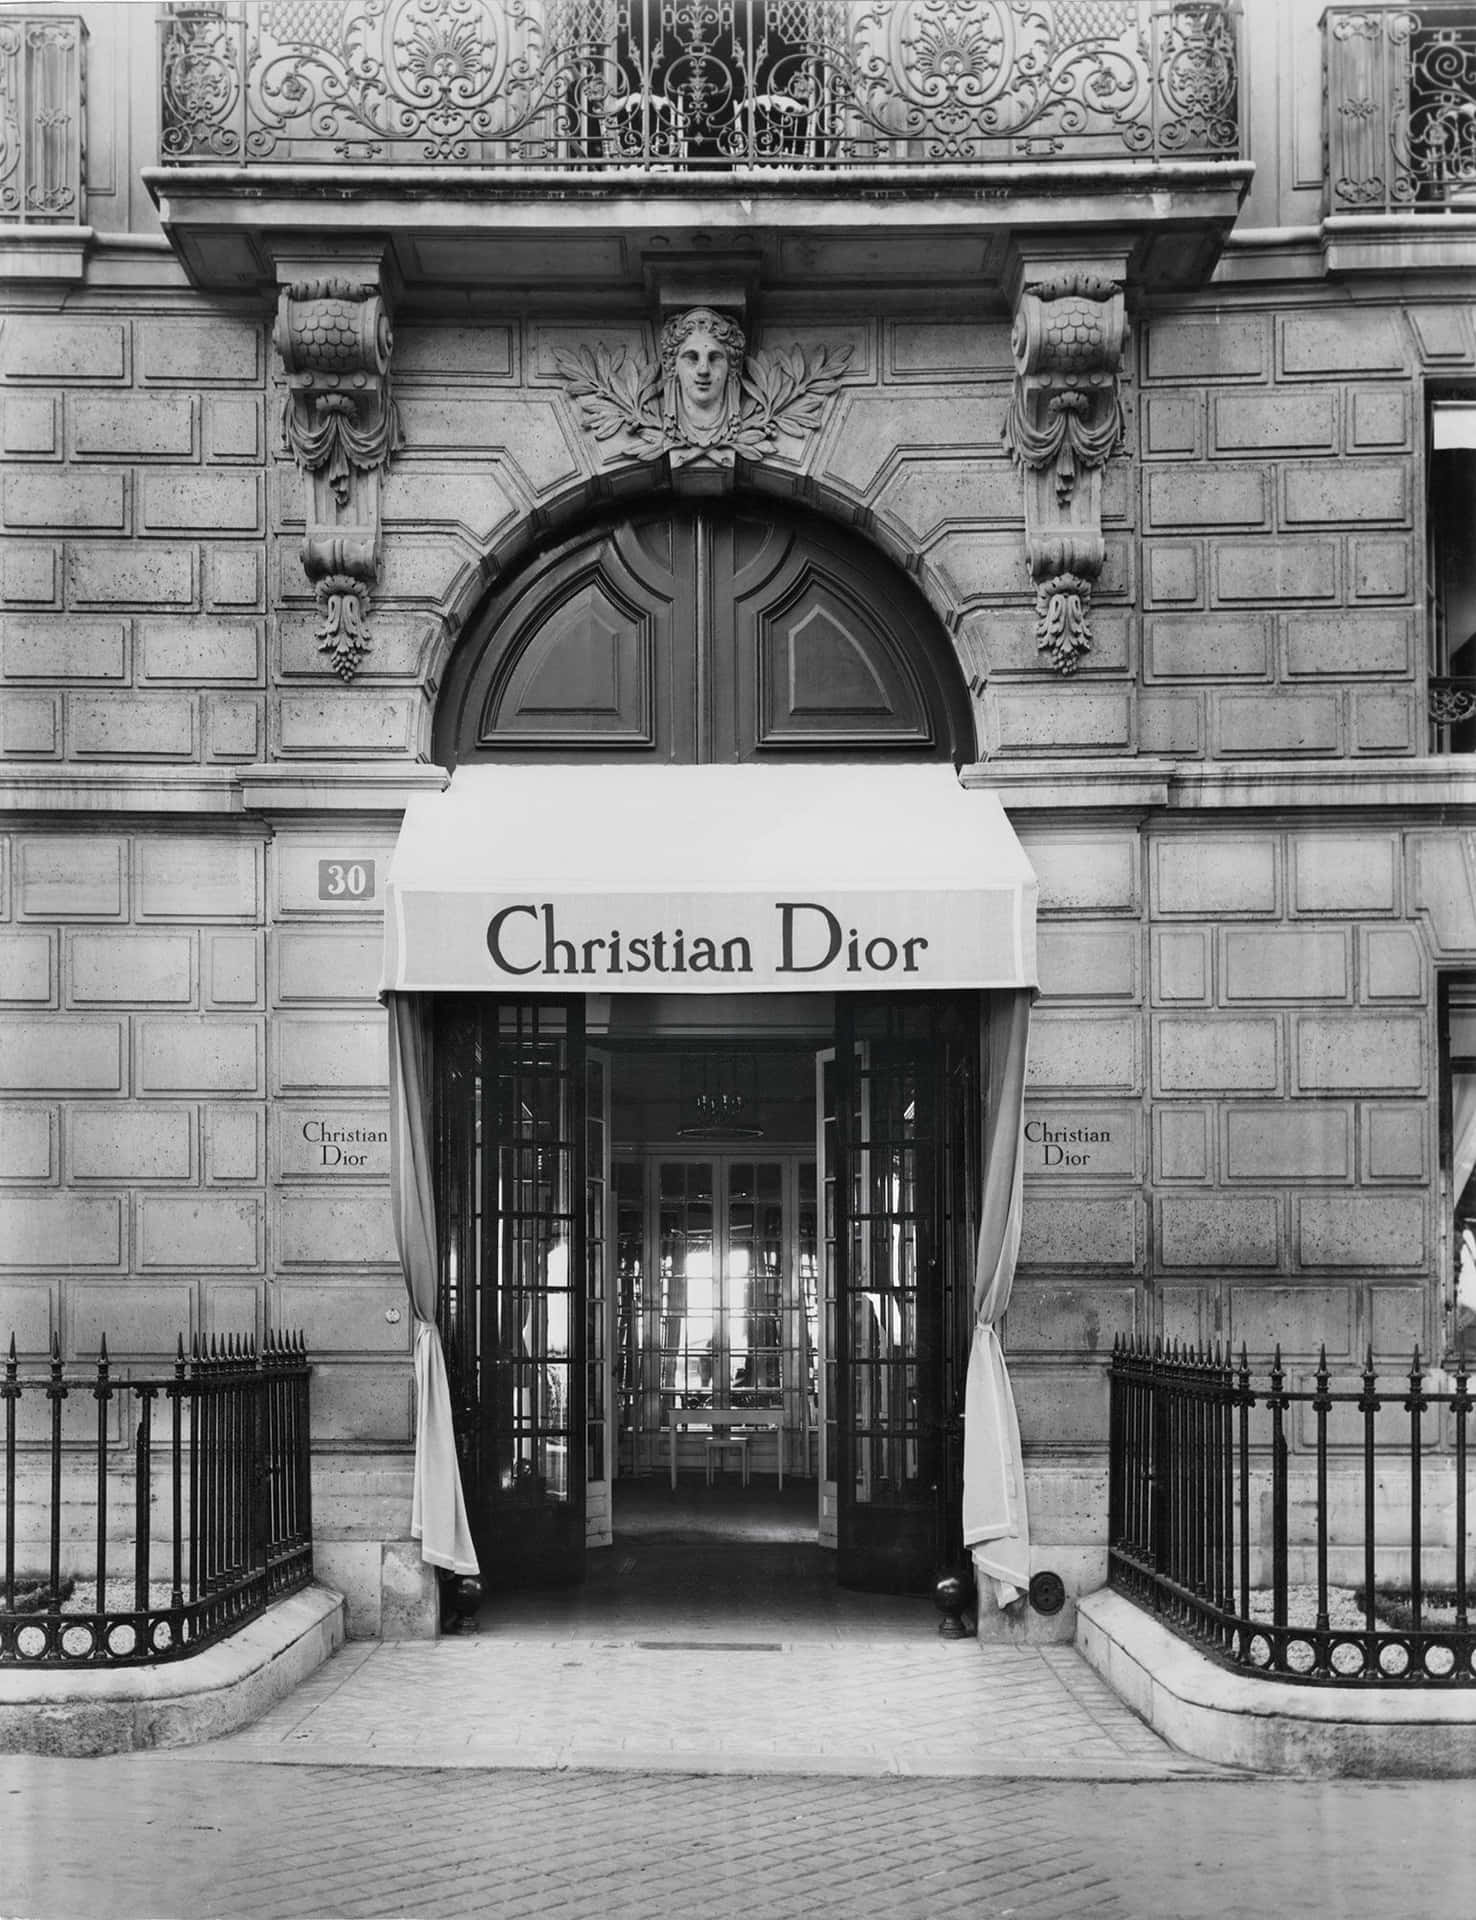 Etsort-hvidt Billede Af En Bygning Med Et Skilt For Christian Dior.